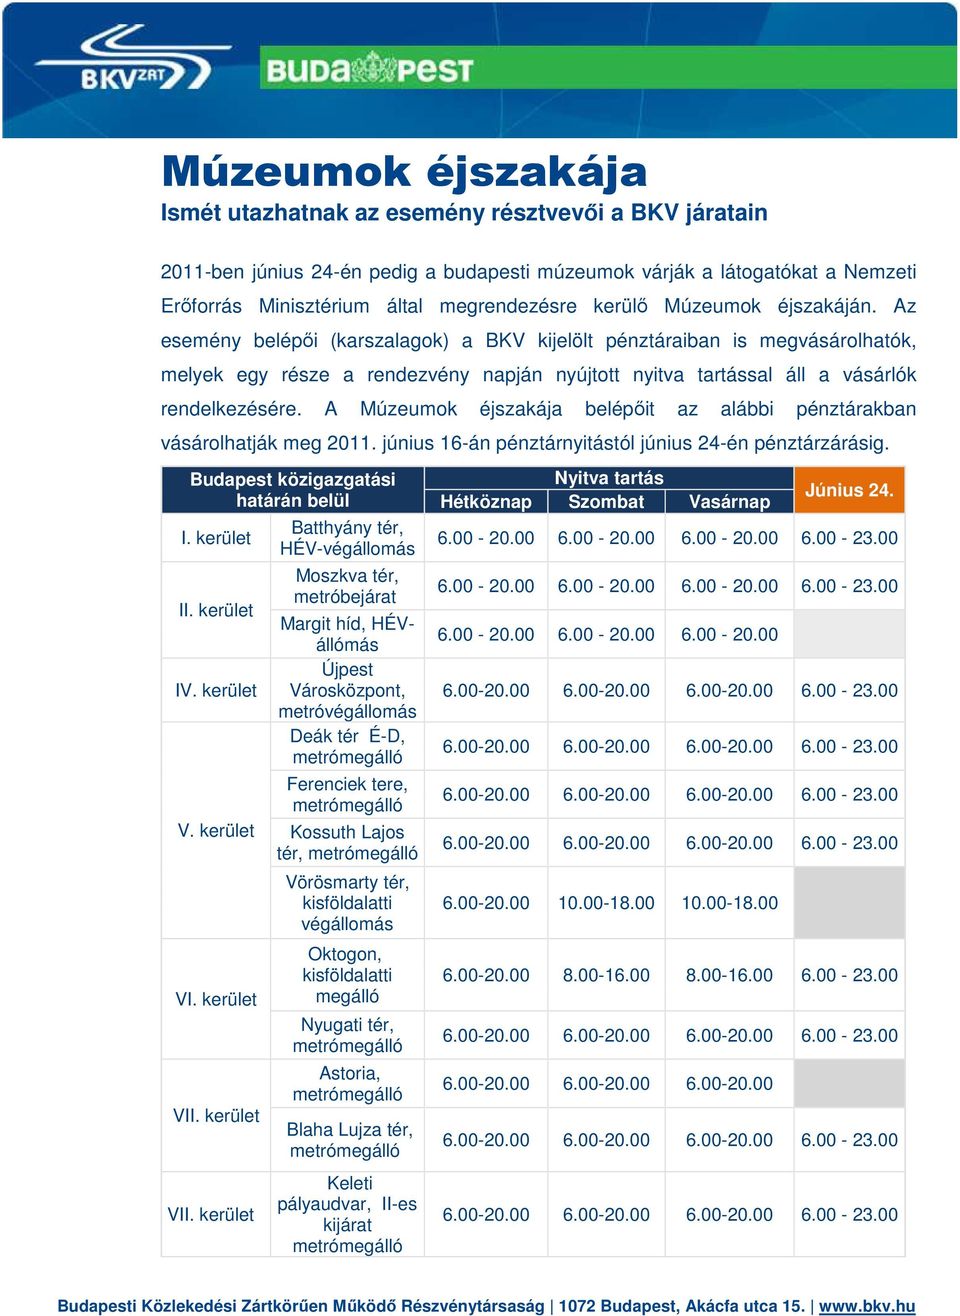 A ok éjszakája belépőit az alábbi pénztárakban vásárolhatják meg 2011. június 16-án pénztárnyitástól június 24-én pénztárzárásig. Budapest közigazgatási határán belül I. kerület II. kerület IV.